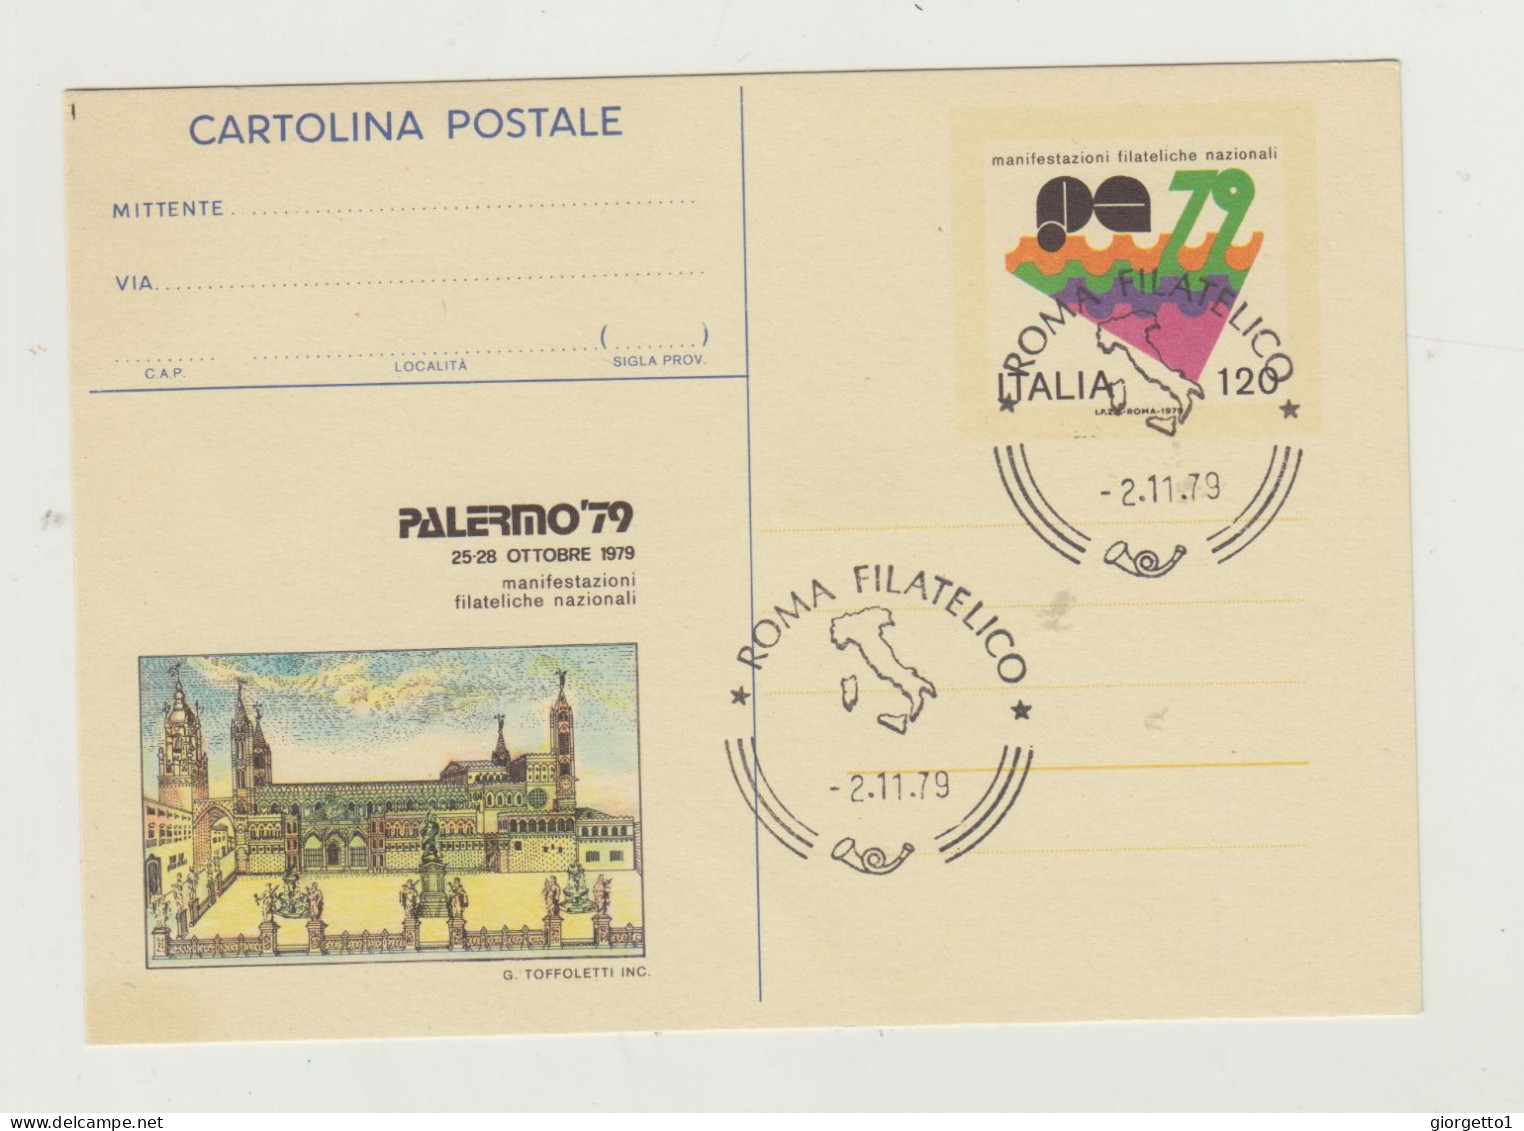 CARTOLINA POSTALE MANIFESTAZIONI FILATELICHE POSTALI - PALERMO 79 - ANNULLO ROMA FILATELICO 2-11-1979 - Marcofilía